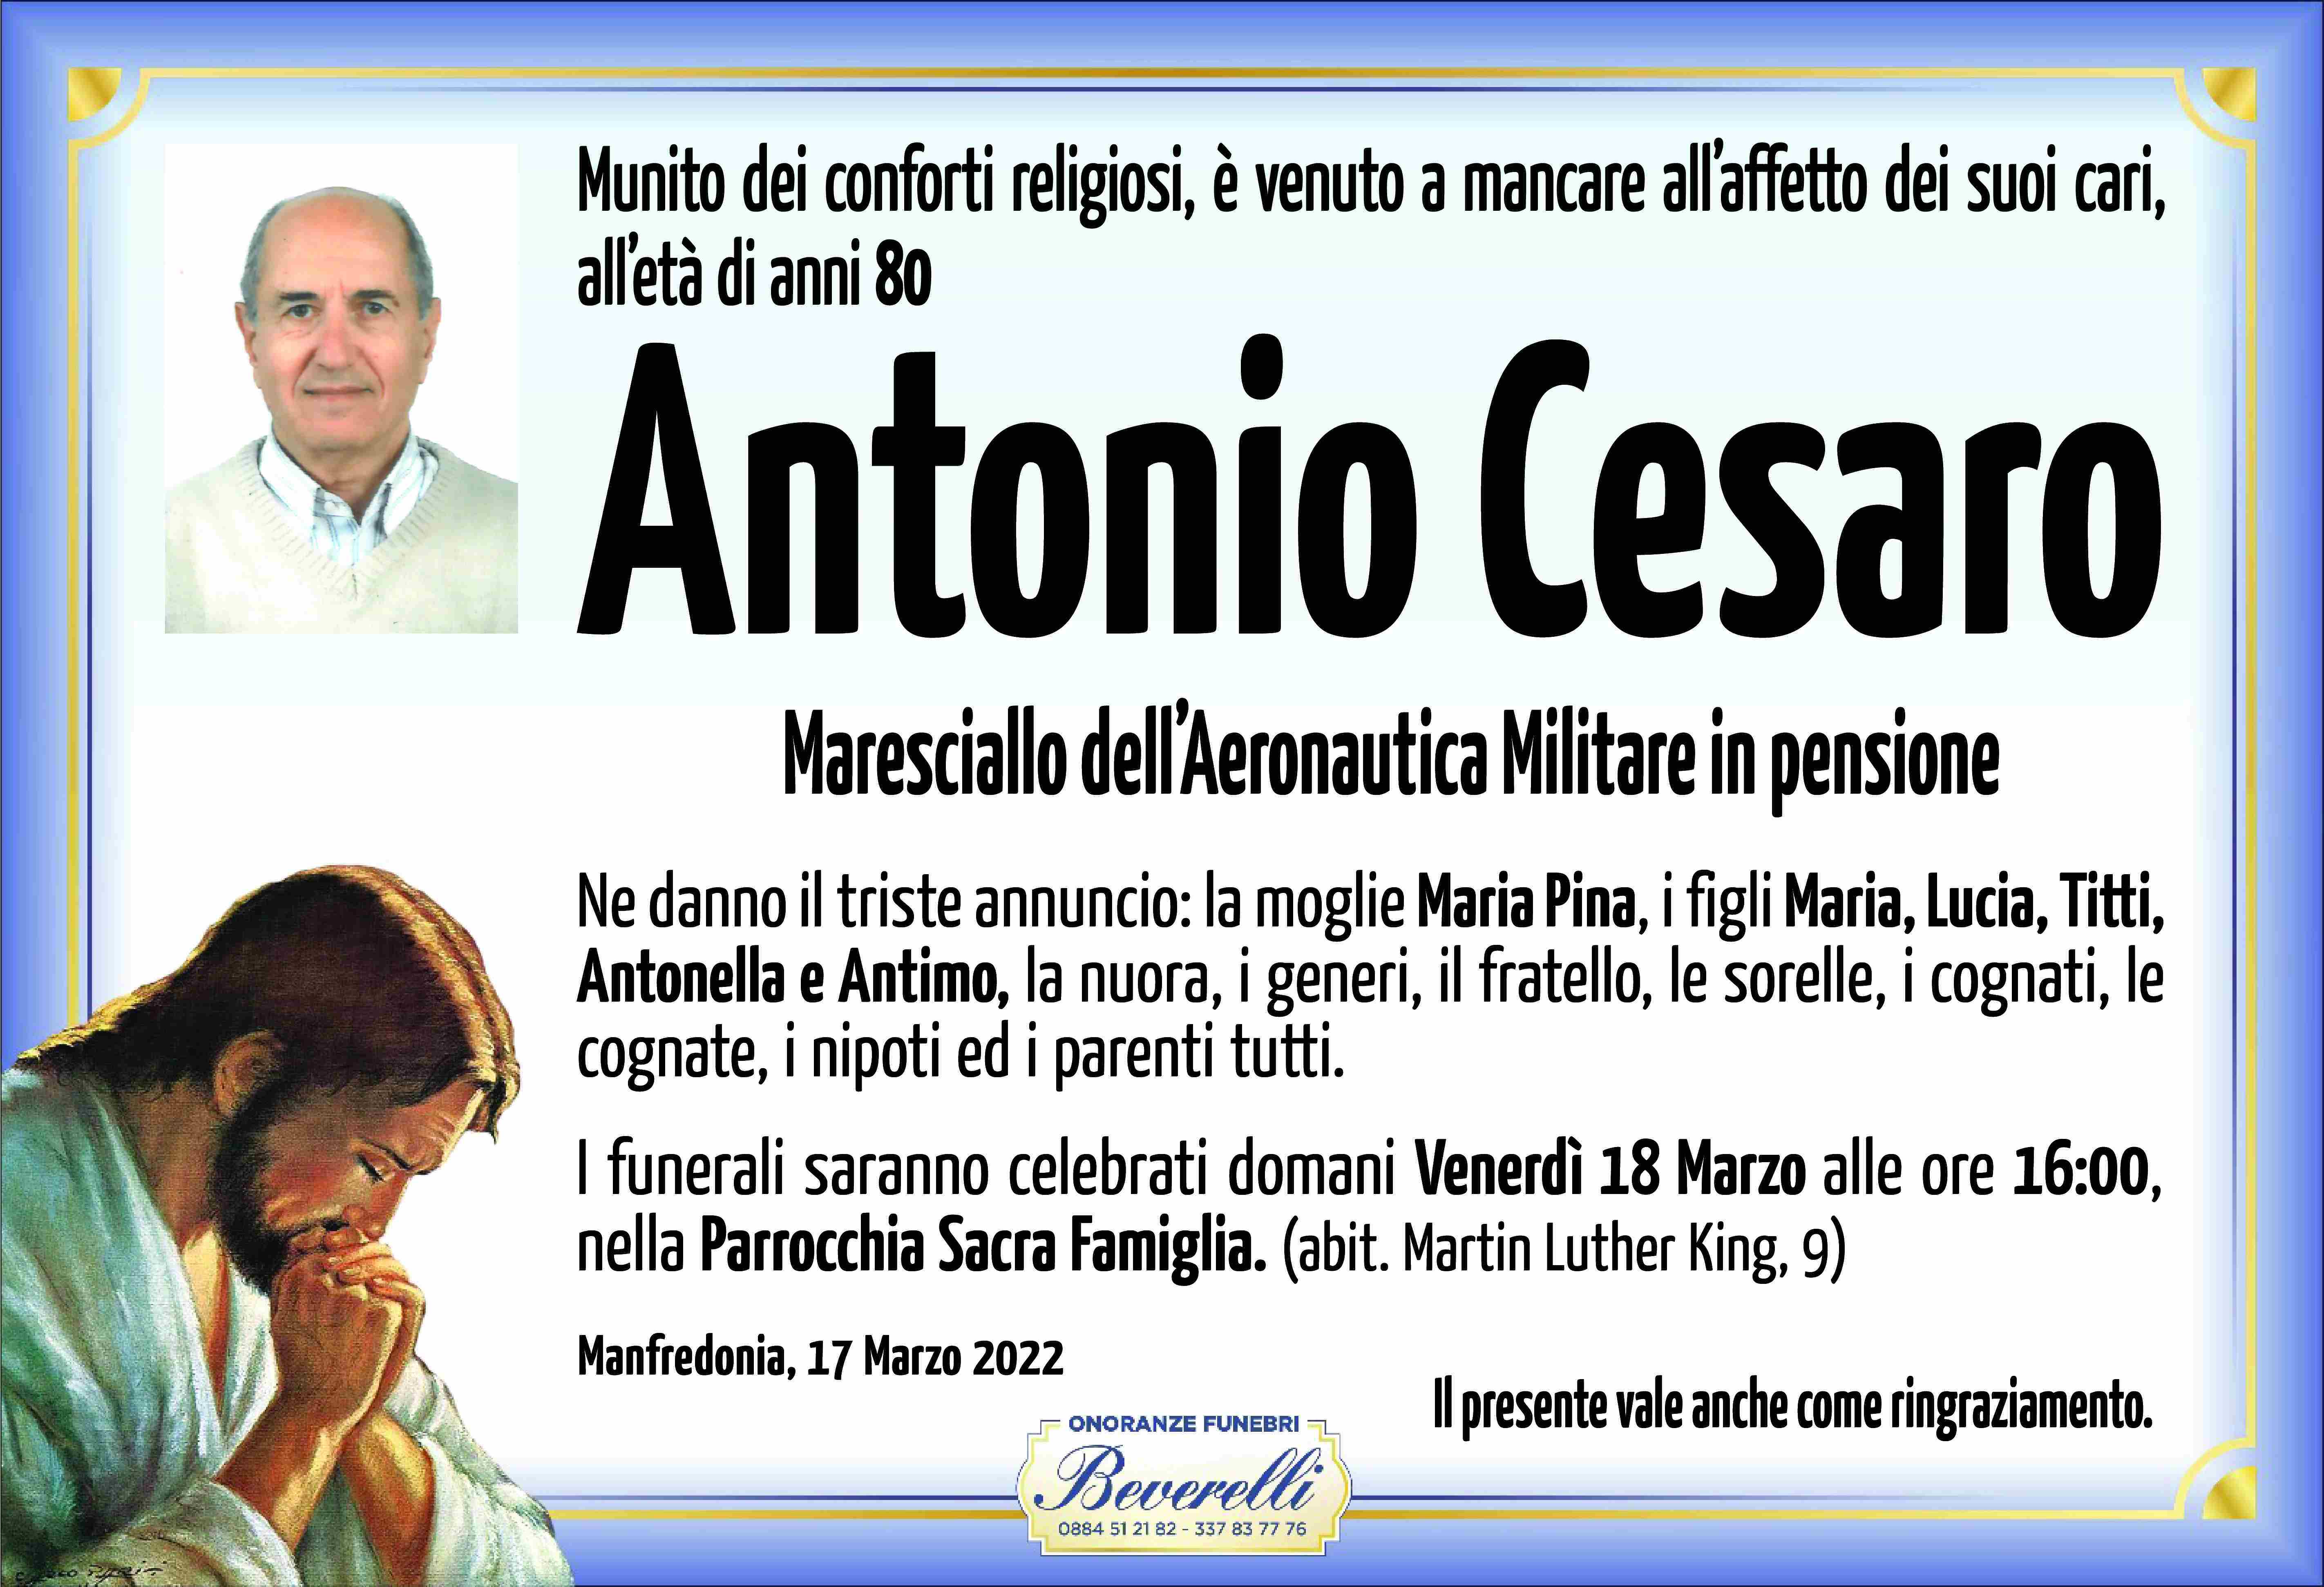 Antonio Cesaro